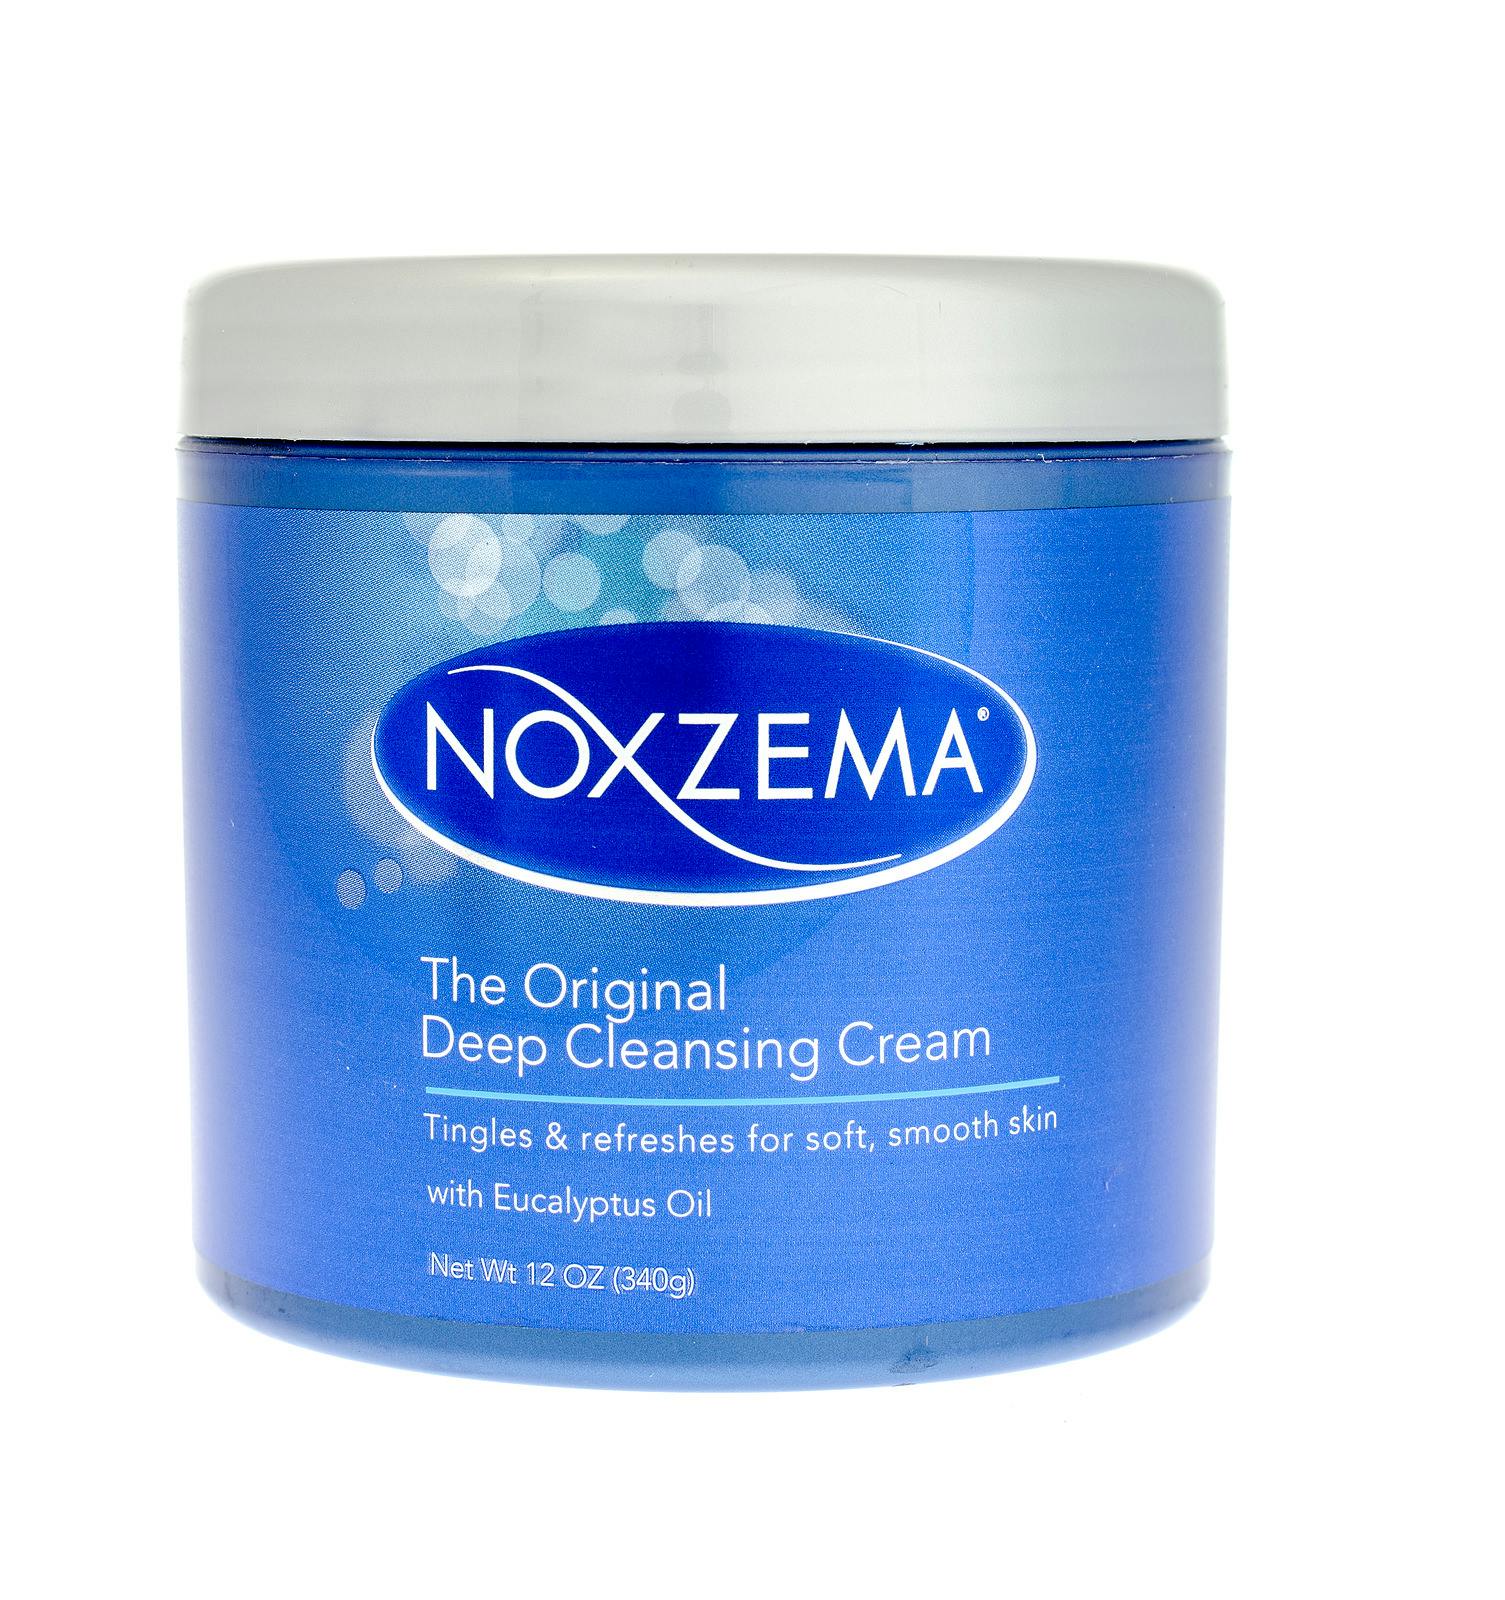 Noxzema deep cleansing cream